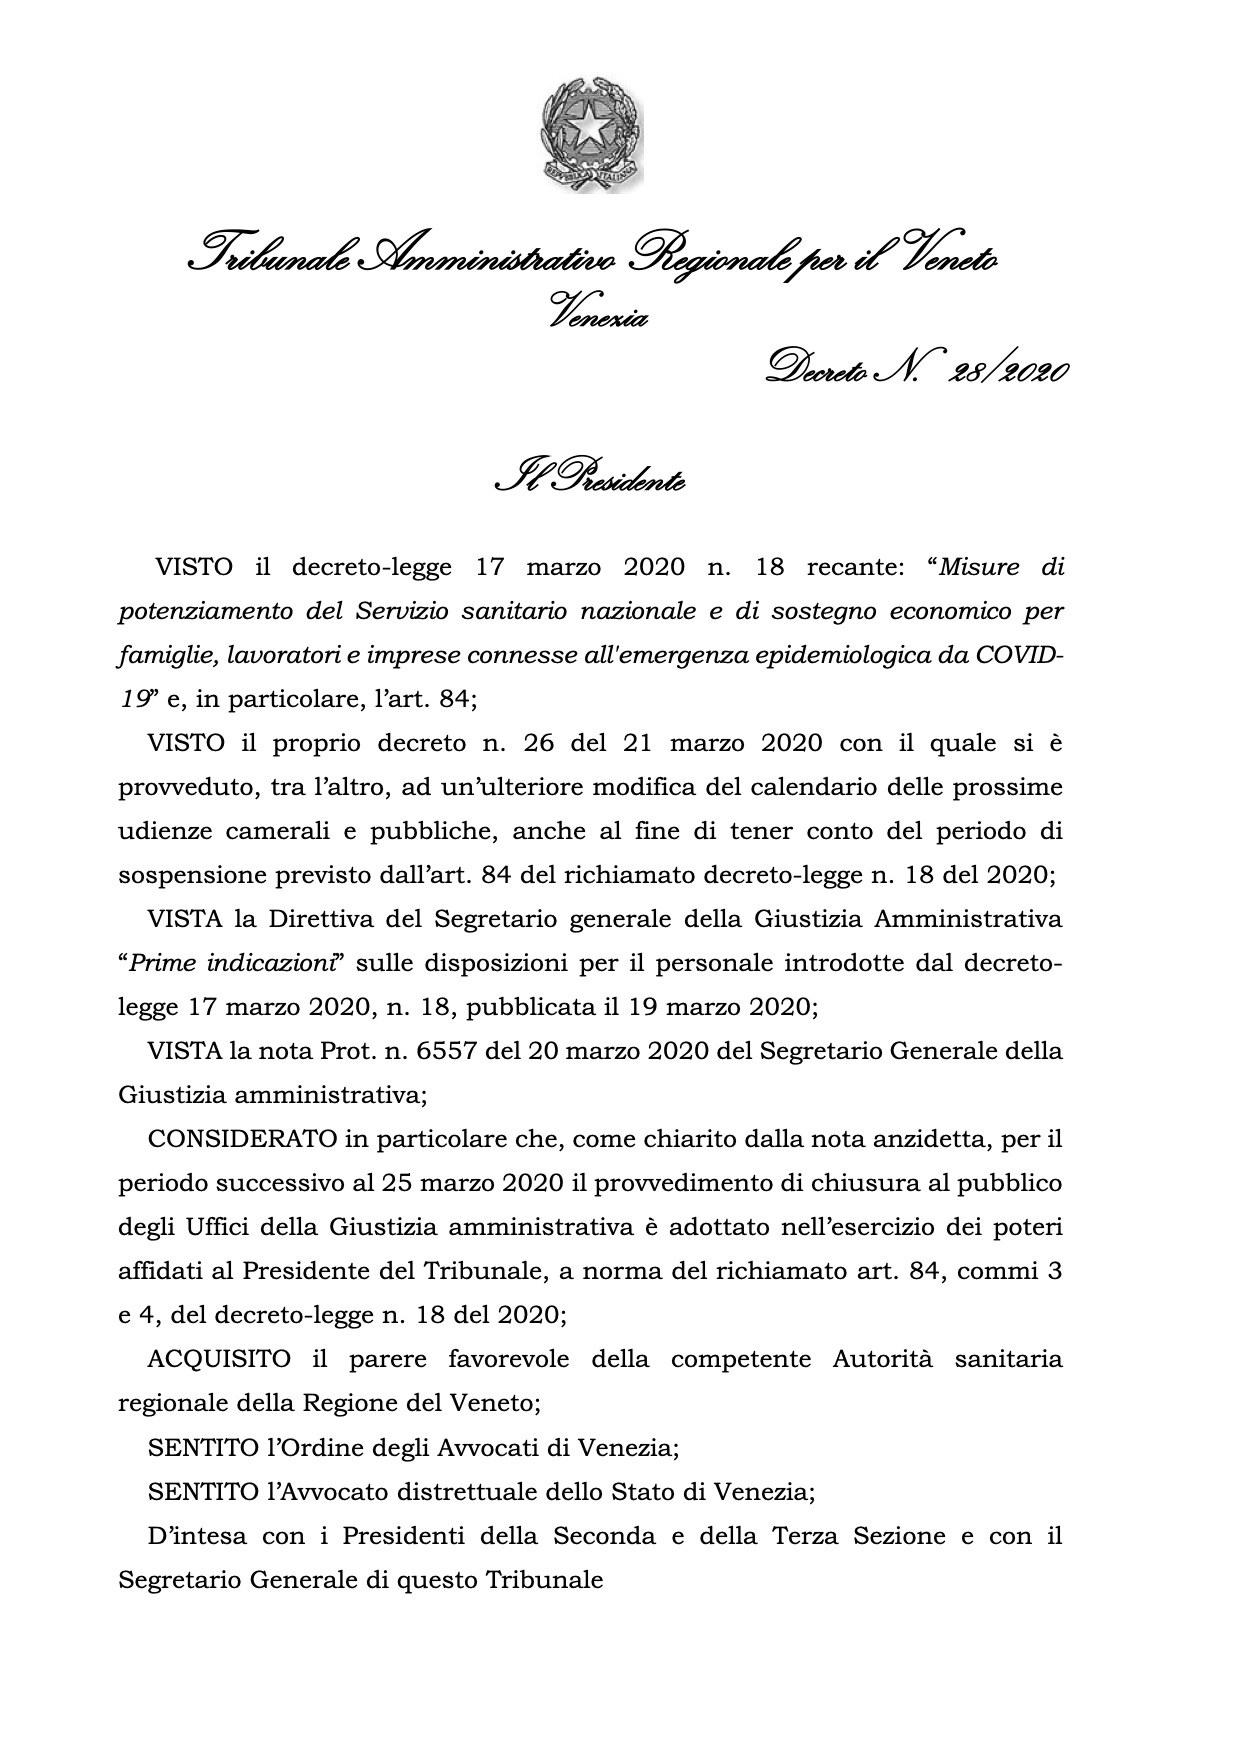 Decreto Presidente TAR Veneto n. 28-2020 Chiusura al pubblico Tar Veneto 25 marzo 2020